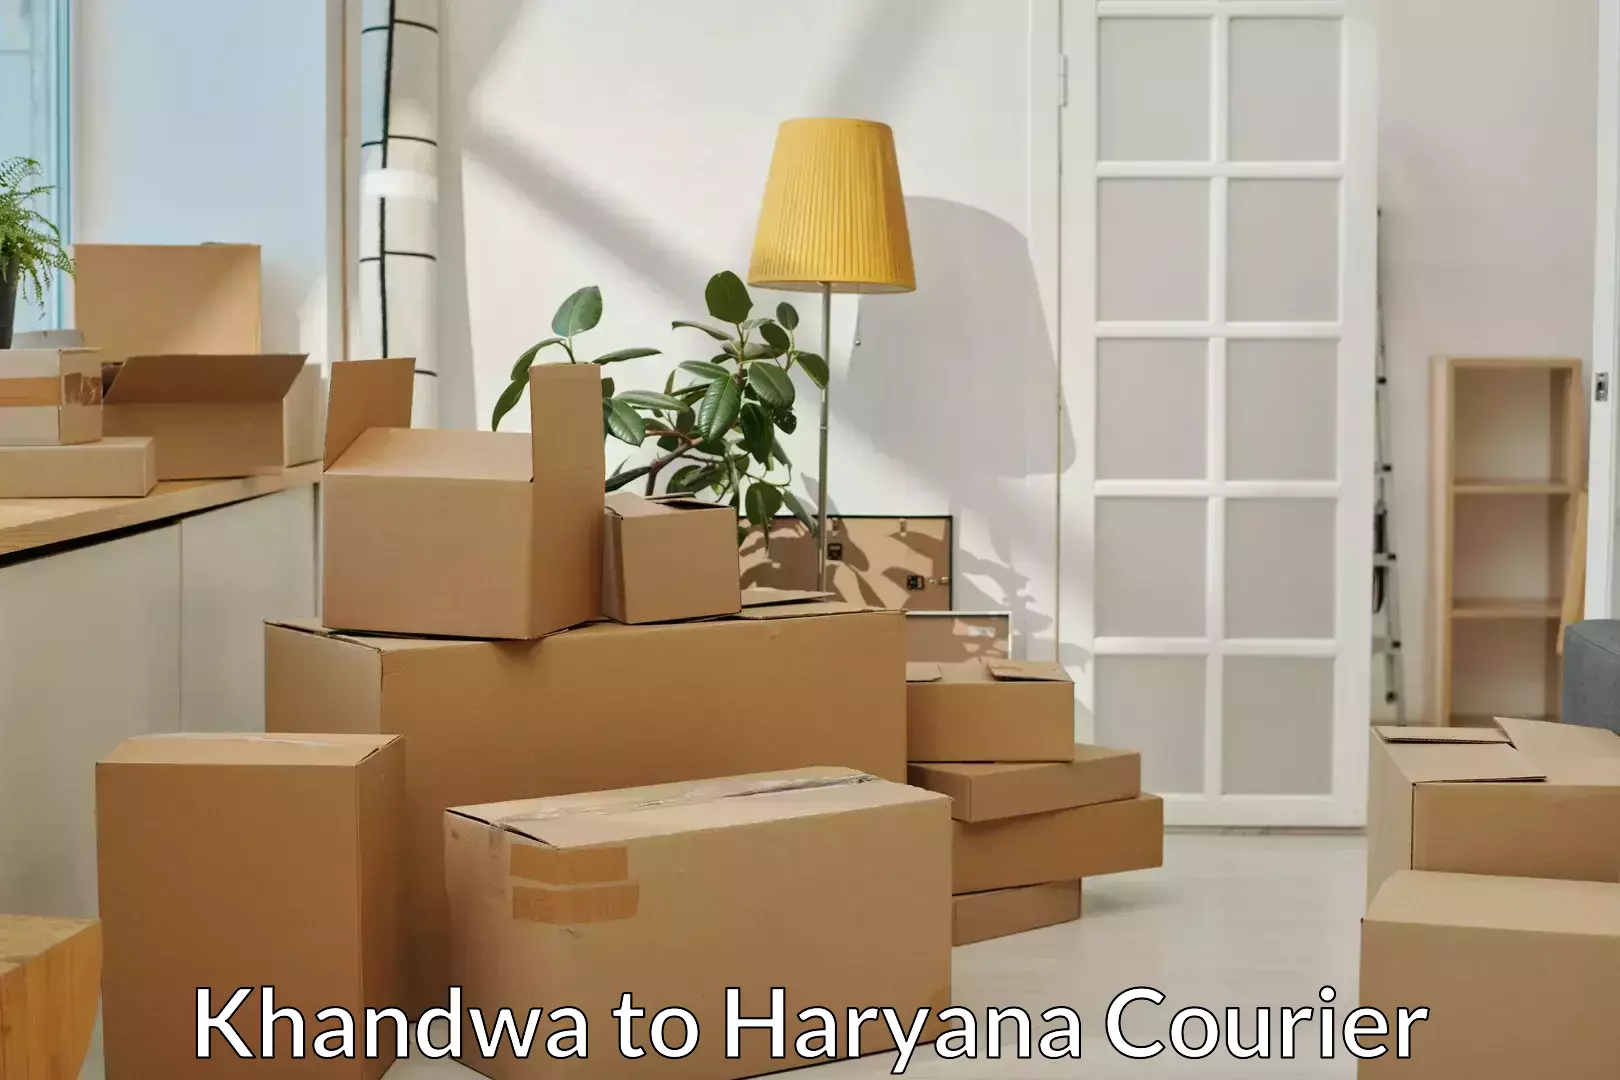 Furniture transport professionals Khandwa to Dharuhera